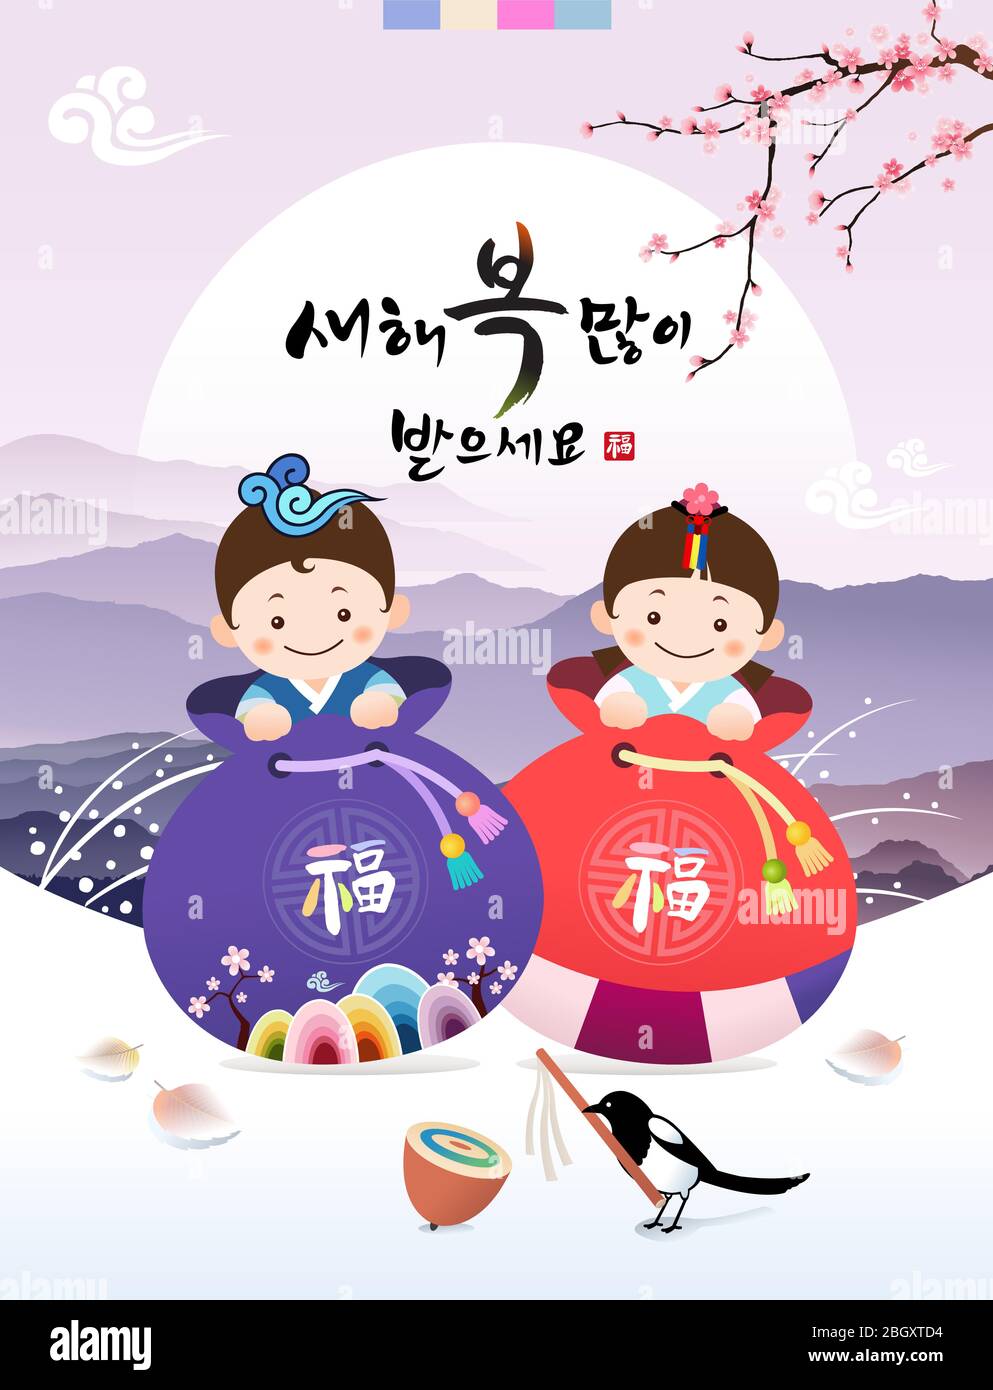 Frohes neues Jahr, Koreanisch Text Übersetzung: Frohes neues Jahr, Kalligraphie und Koreanisch traditionelle Glückstasche und Kinder. Stock Vektor